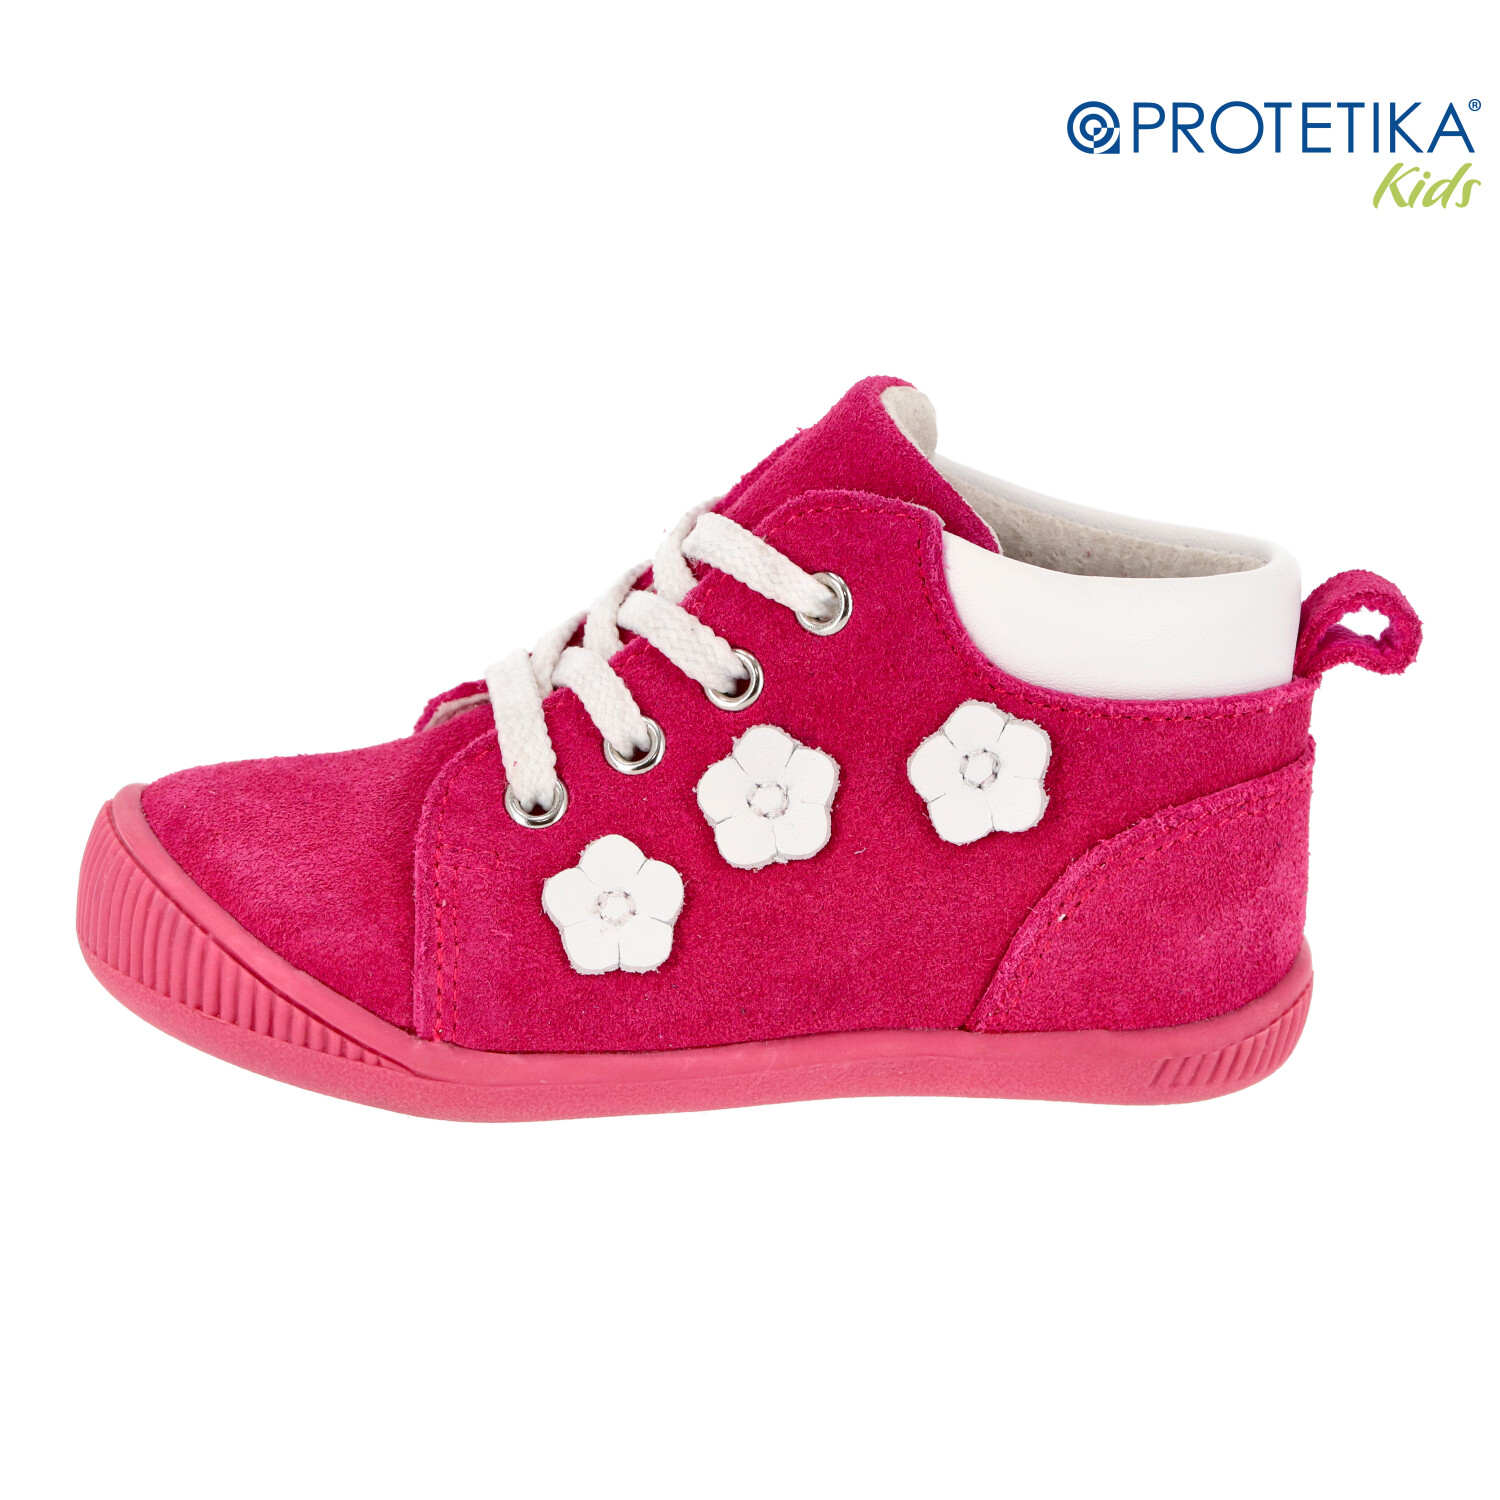 Protetika - topánky BABY rosa